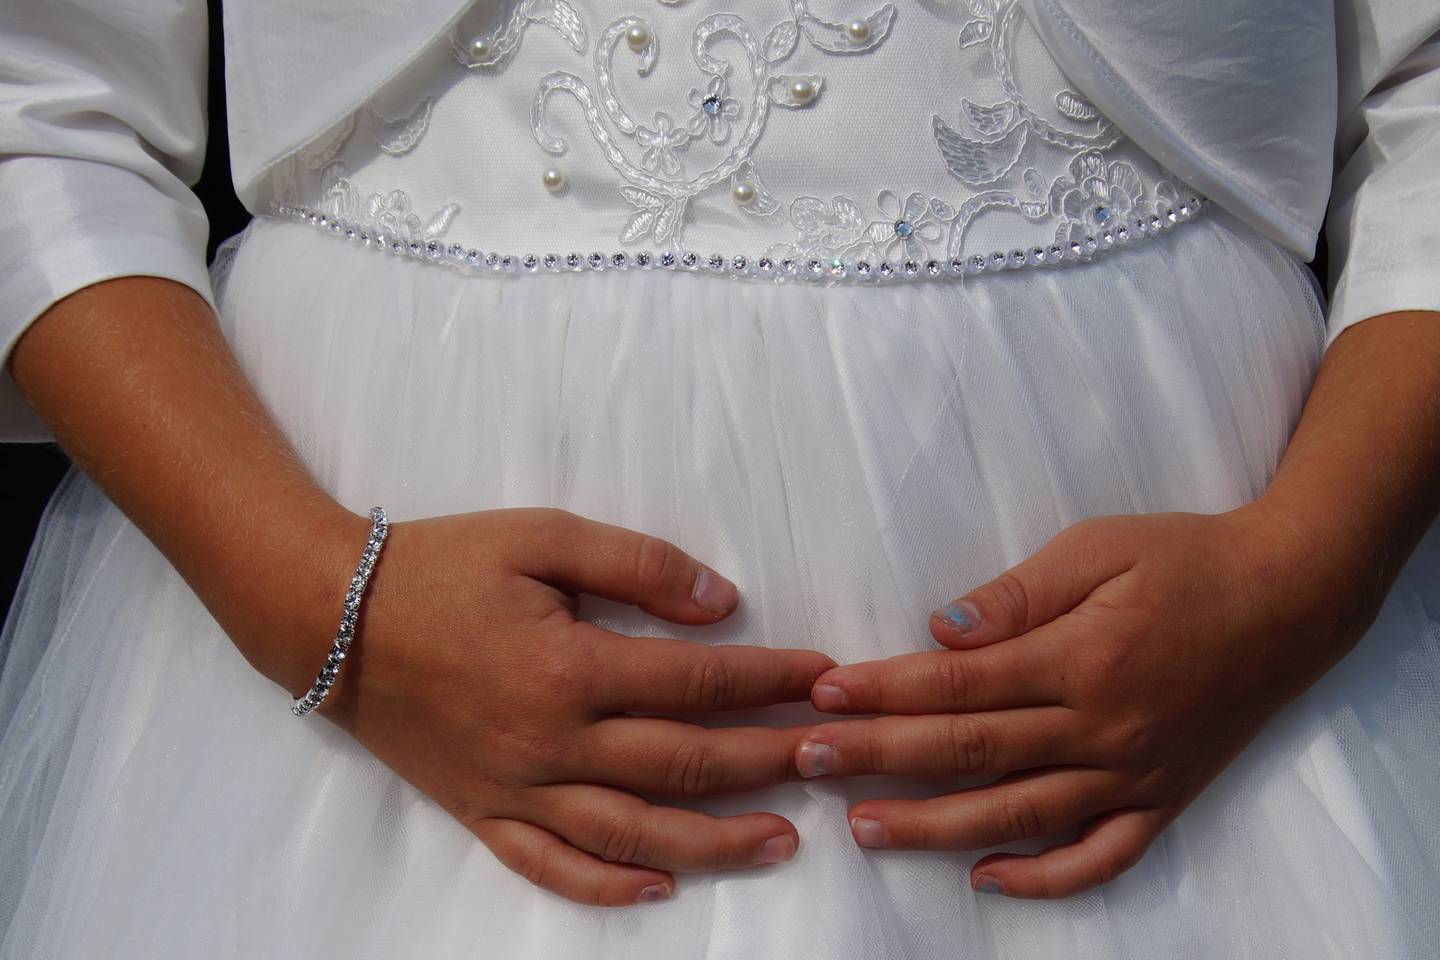 Bolivia es el país de la región con mayor índice de embarazo en niñas y adolescentes. Esto tiene un fuerte impacto en la reproducción de la pobreza.